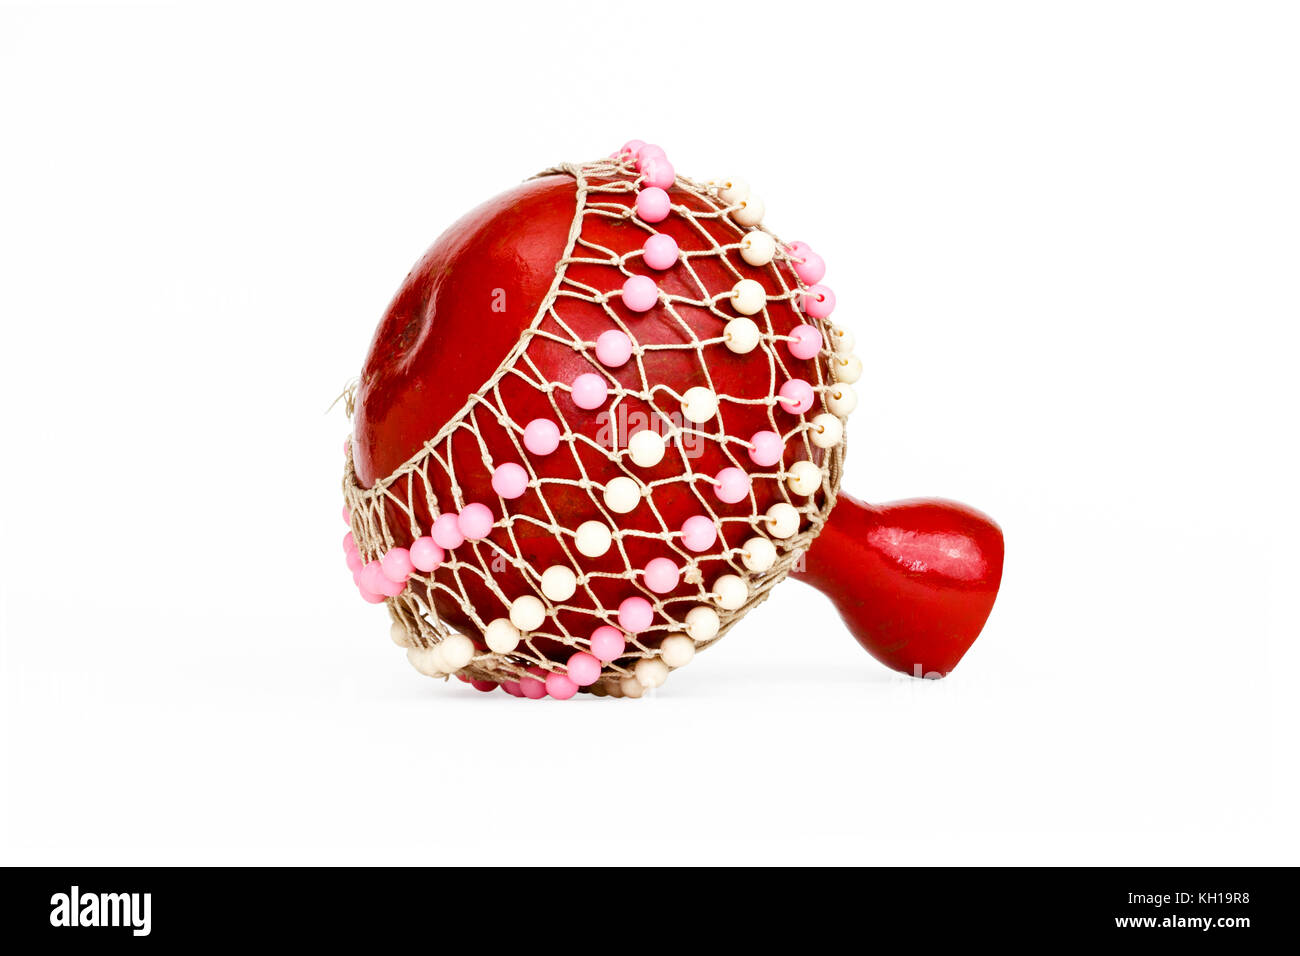 Un shaker musical traditionnel gourde orné de perles rouges, isolé sur fond blanc Banque D'Images